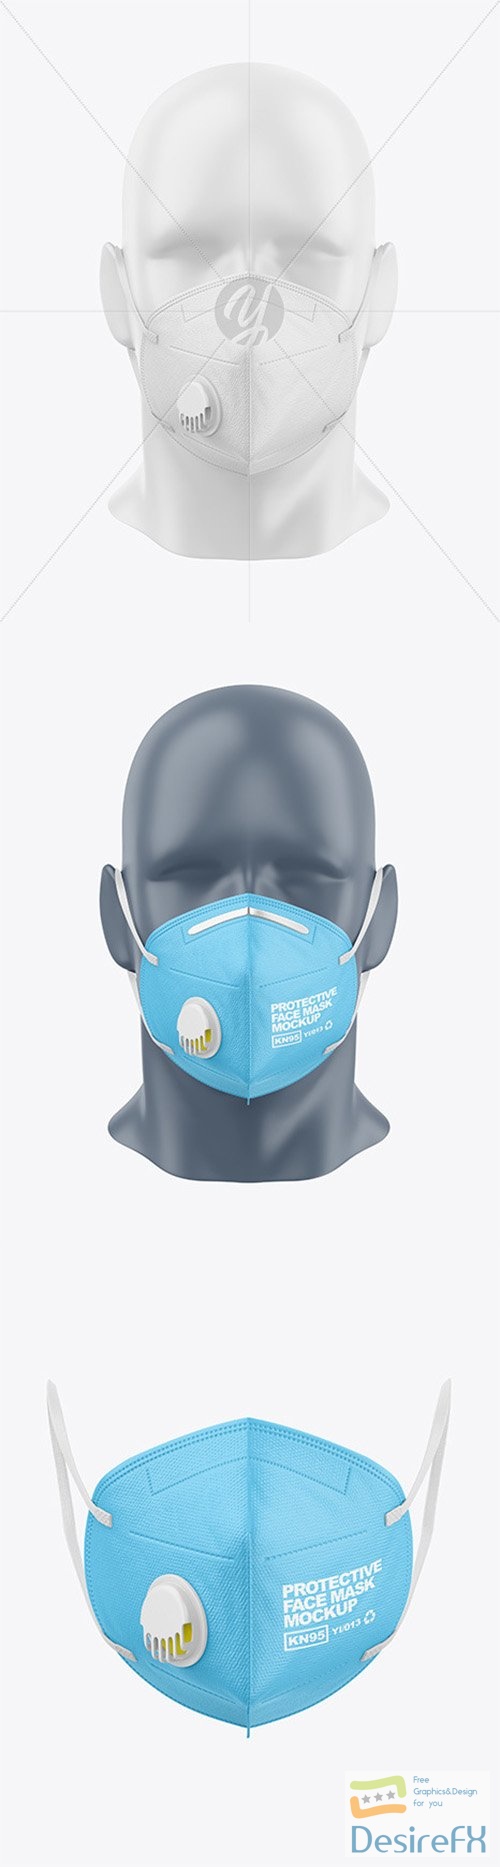 Protective Face Mask Mockup 80058 TIF